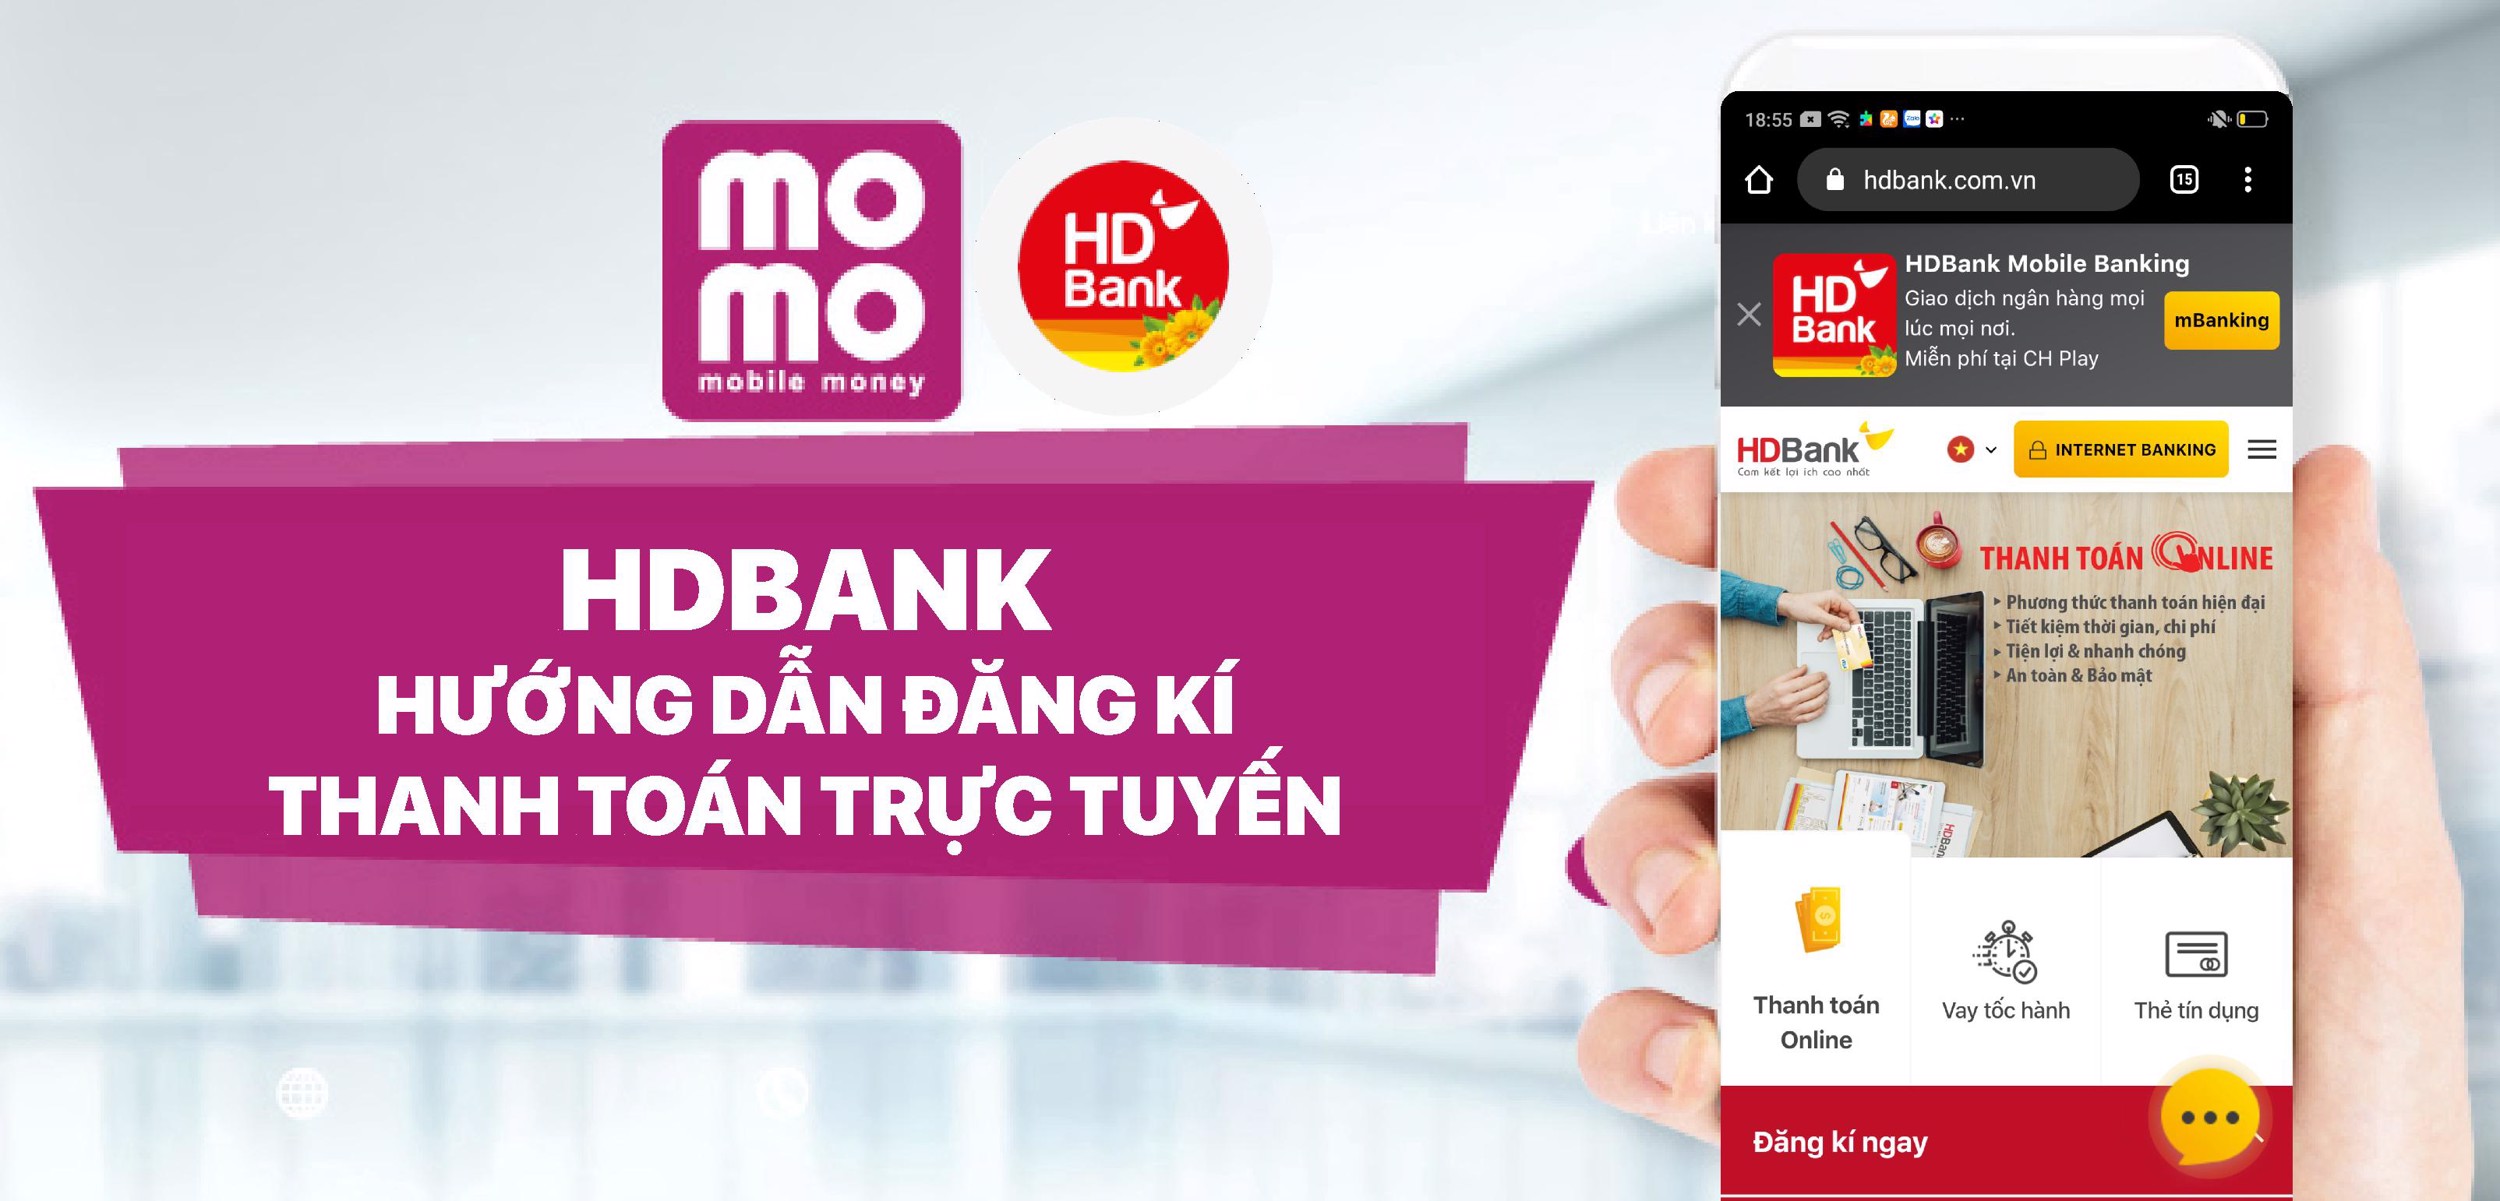 Hướng dẫn đăng kí thanh toán trực tuyến HDBank